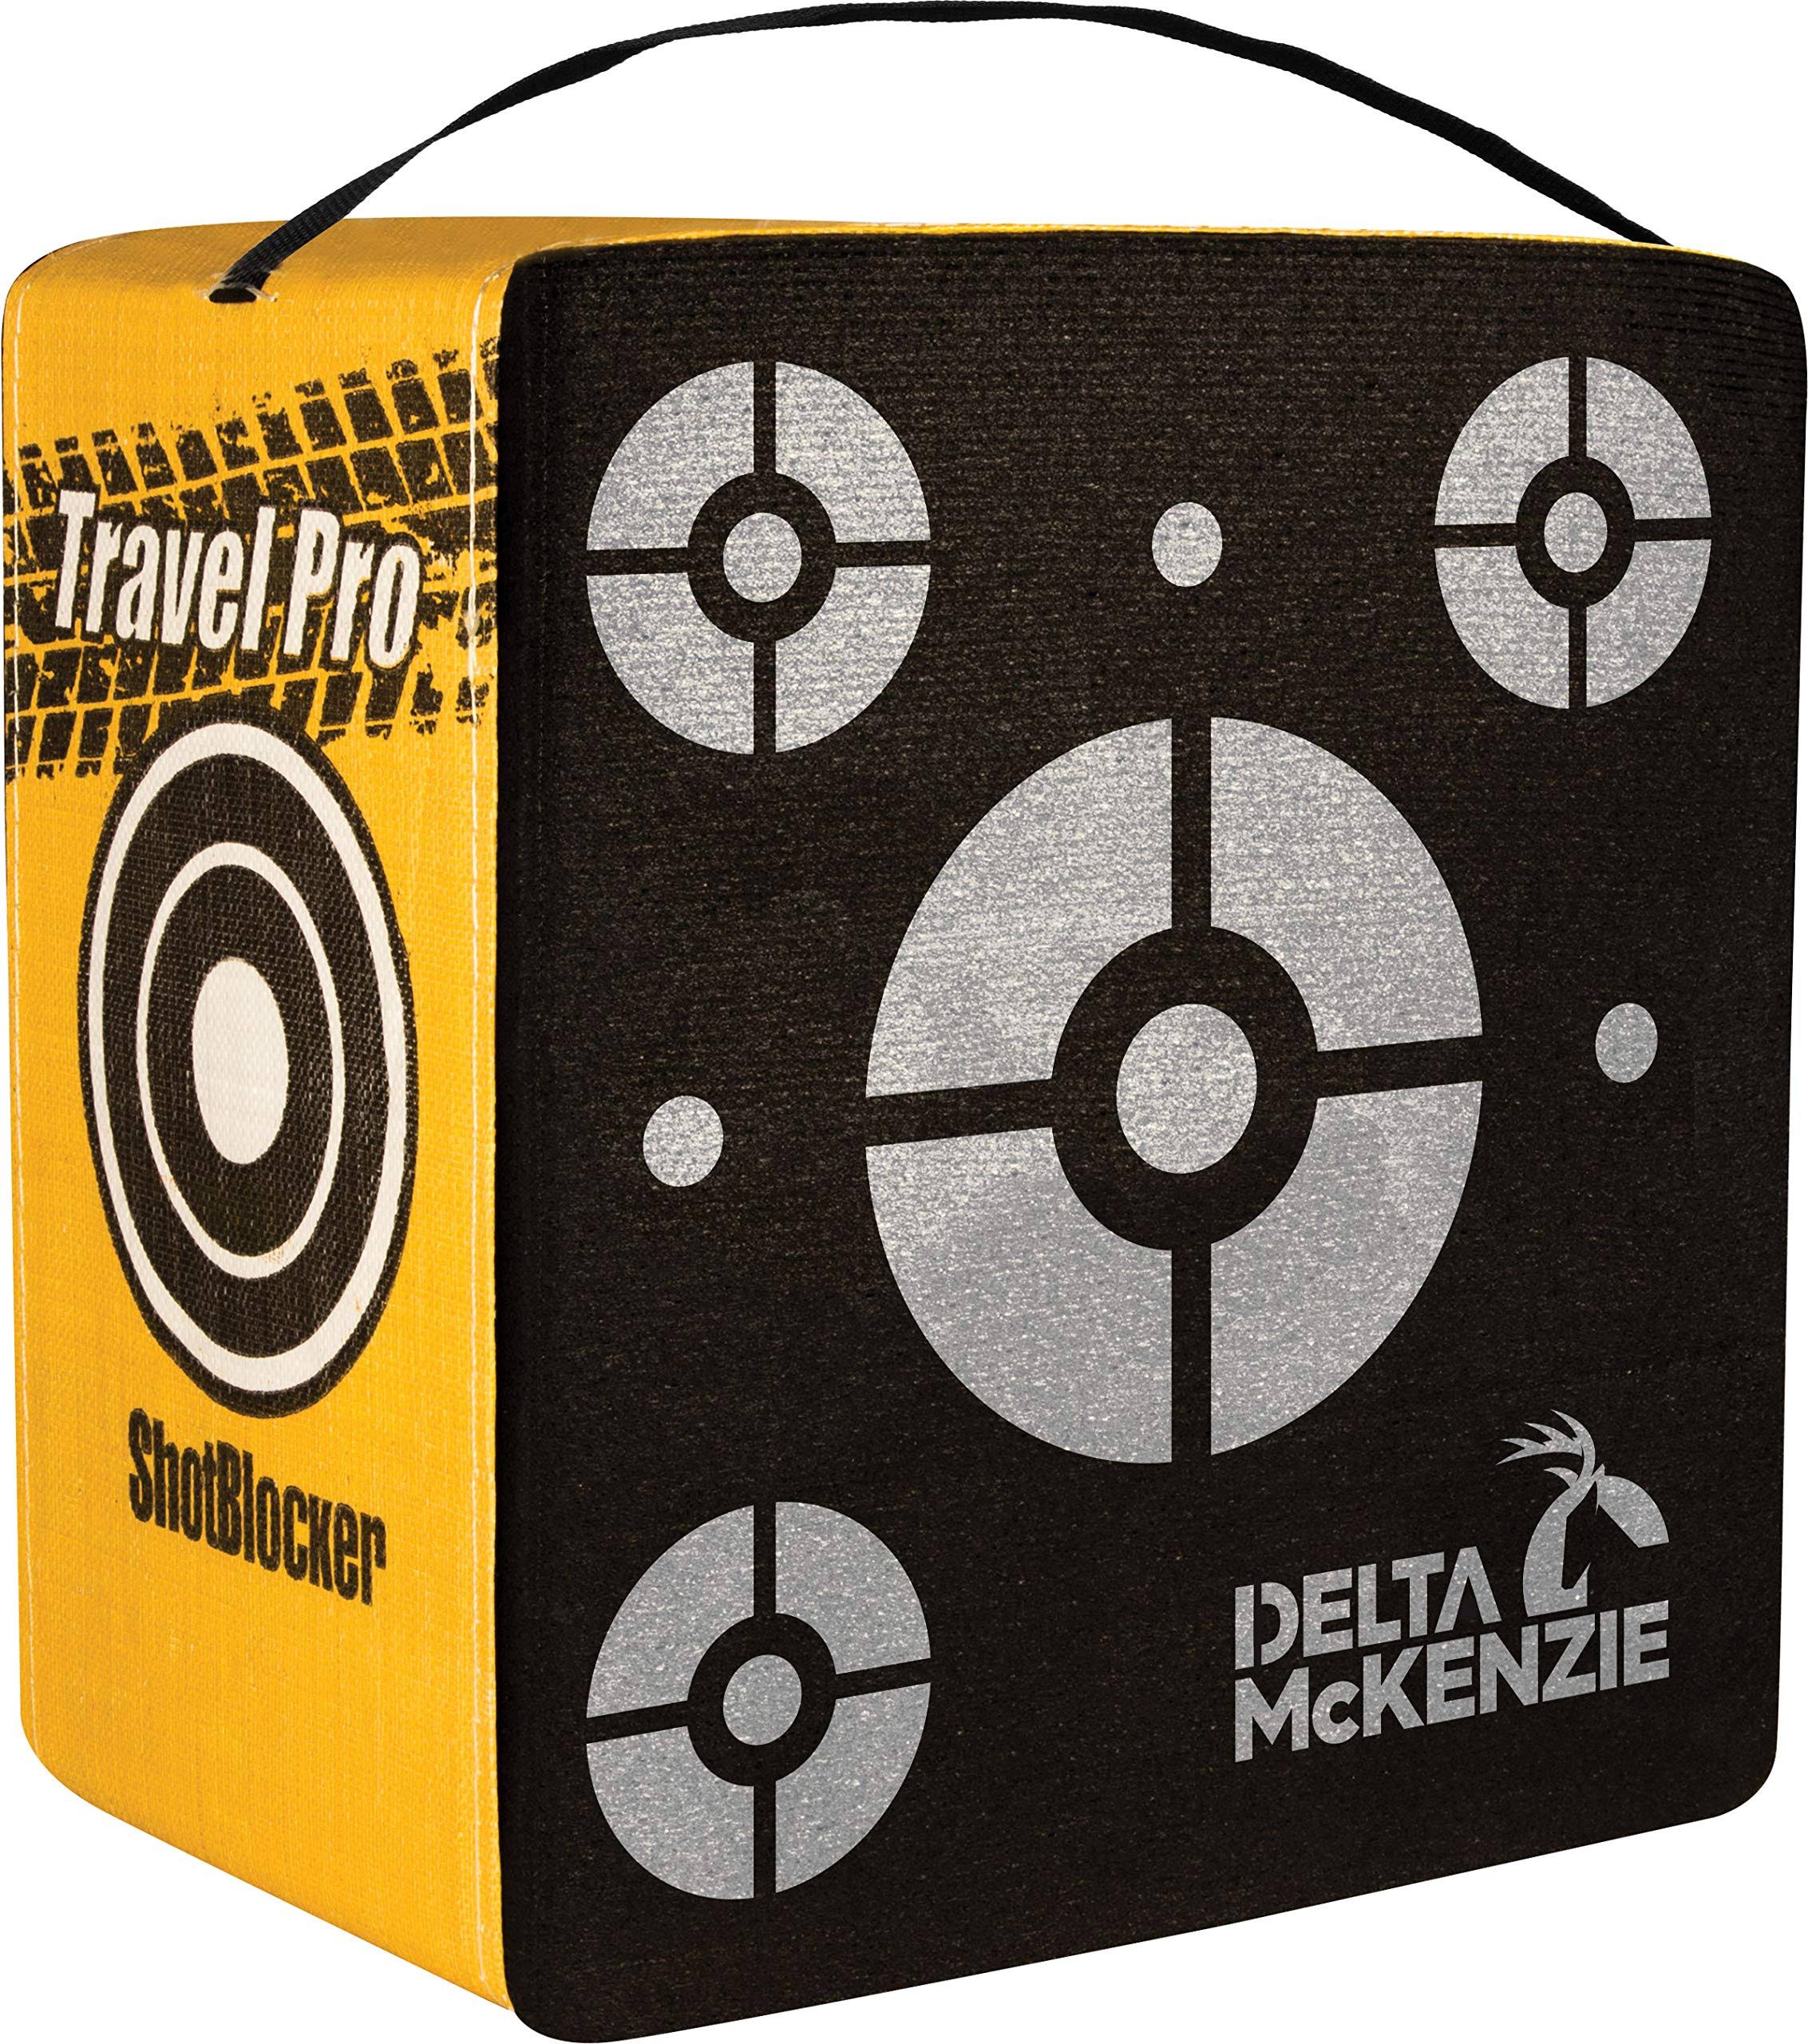 Travel Pro Foam Archery Target, Delta, 20890